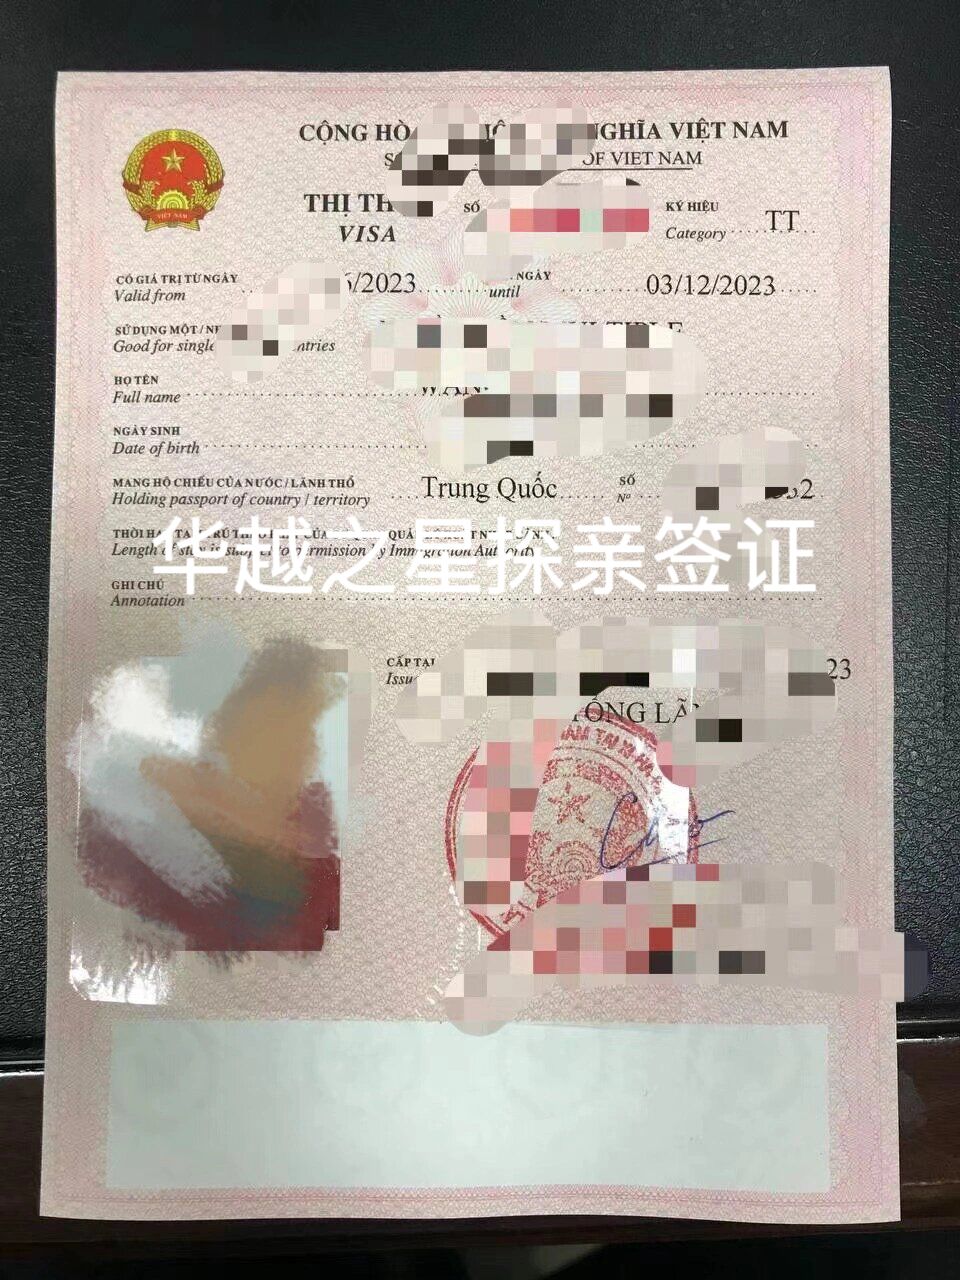 越南探亲签证.jpg